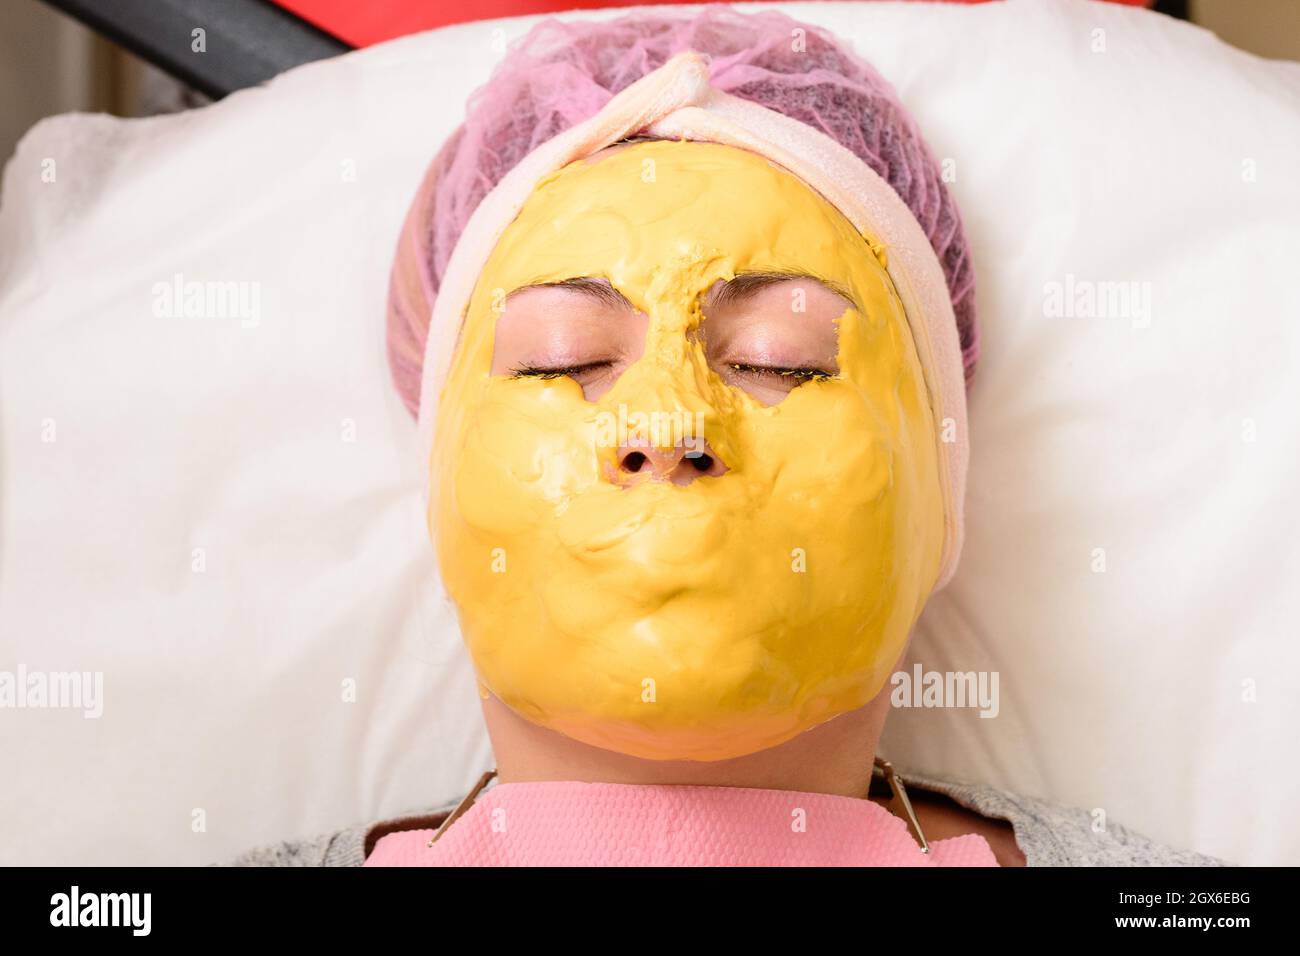 La maschera d'oro copre tutto il viso tranne gli occhi, una maschera per  ripristinare, idratare e ringiovanire la pelle. Nuovo Foto stock - Alamy